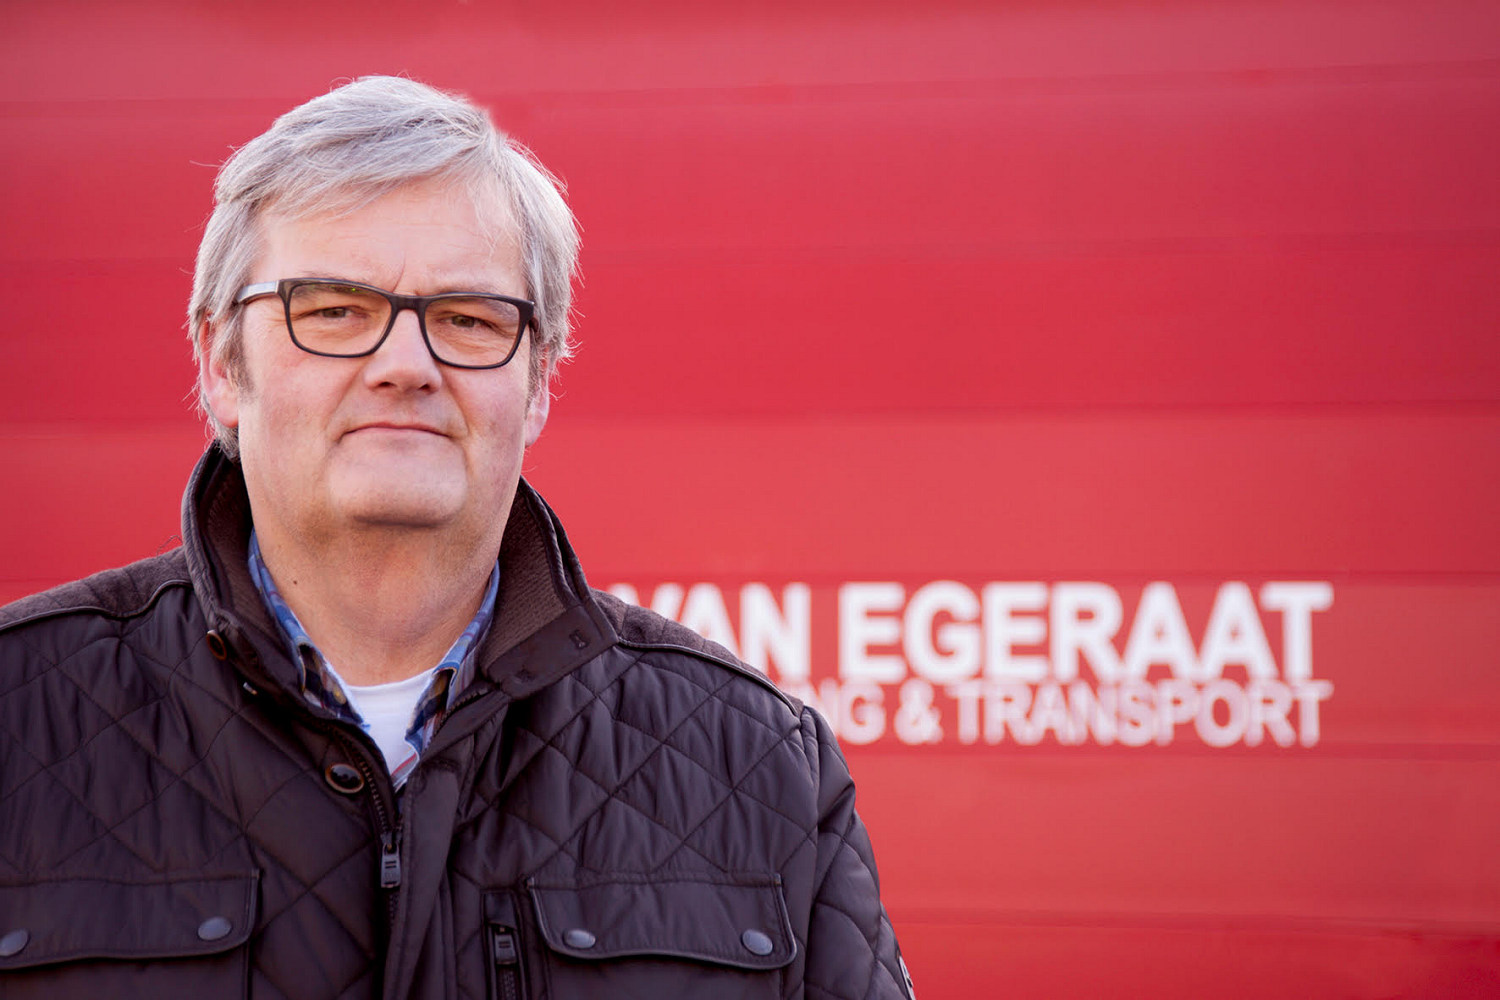 Edwin van Egeraat of Van Egeraat Berging en Transport